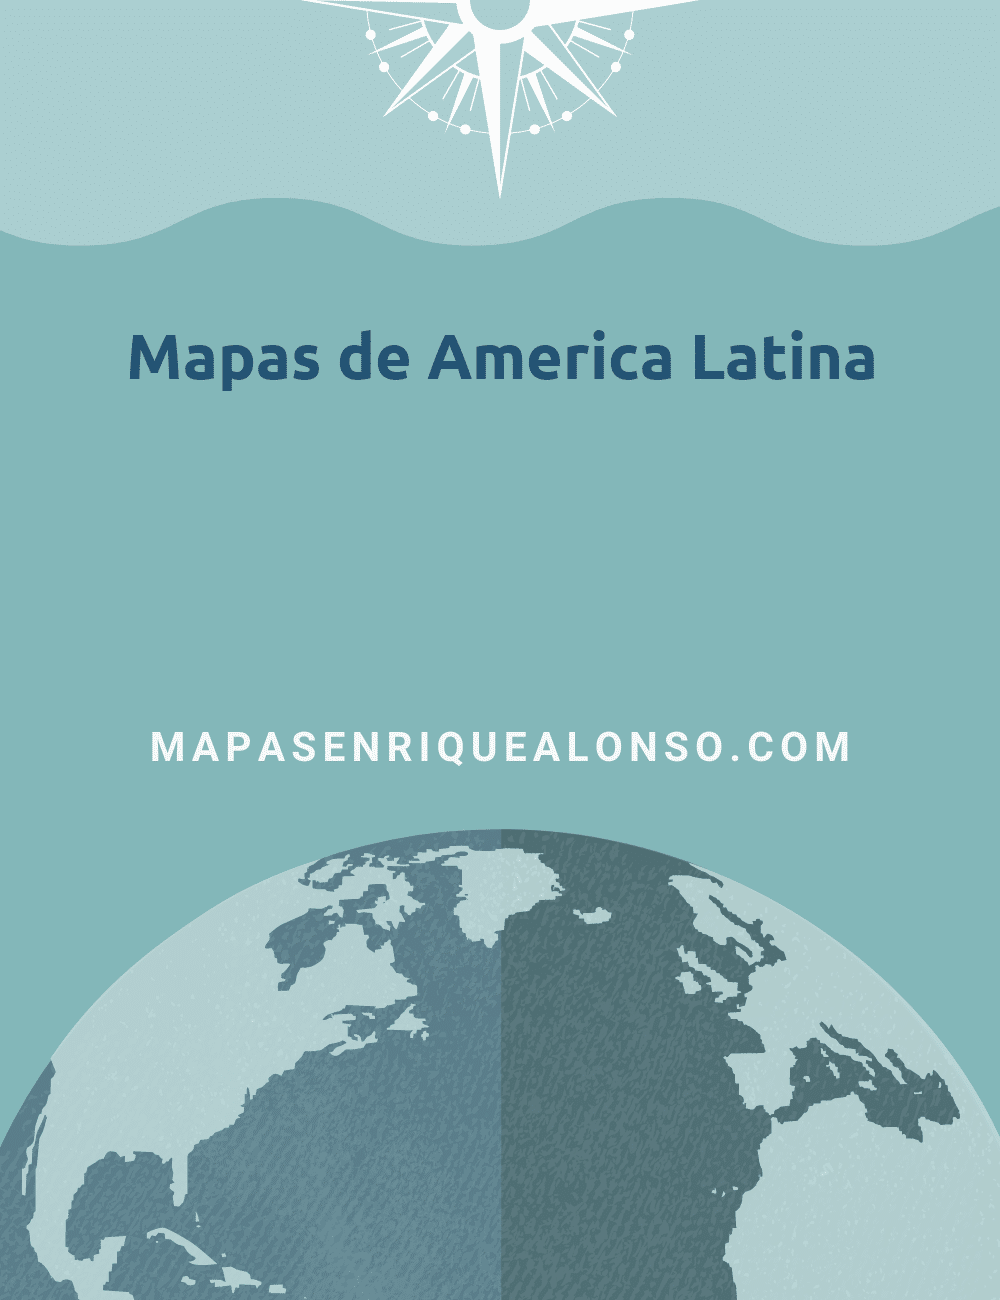 Mapas de America Latina